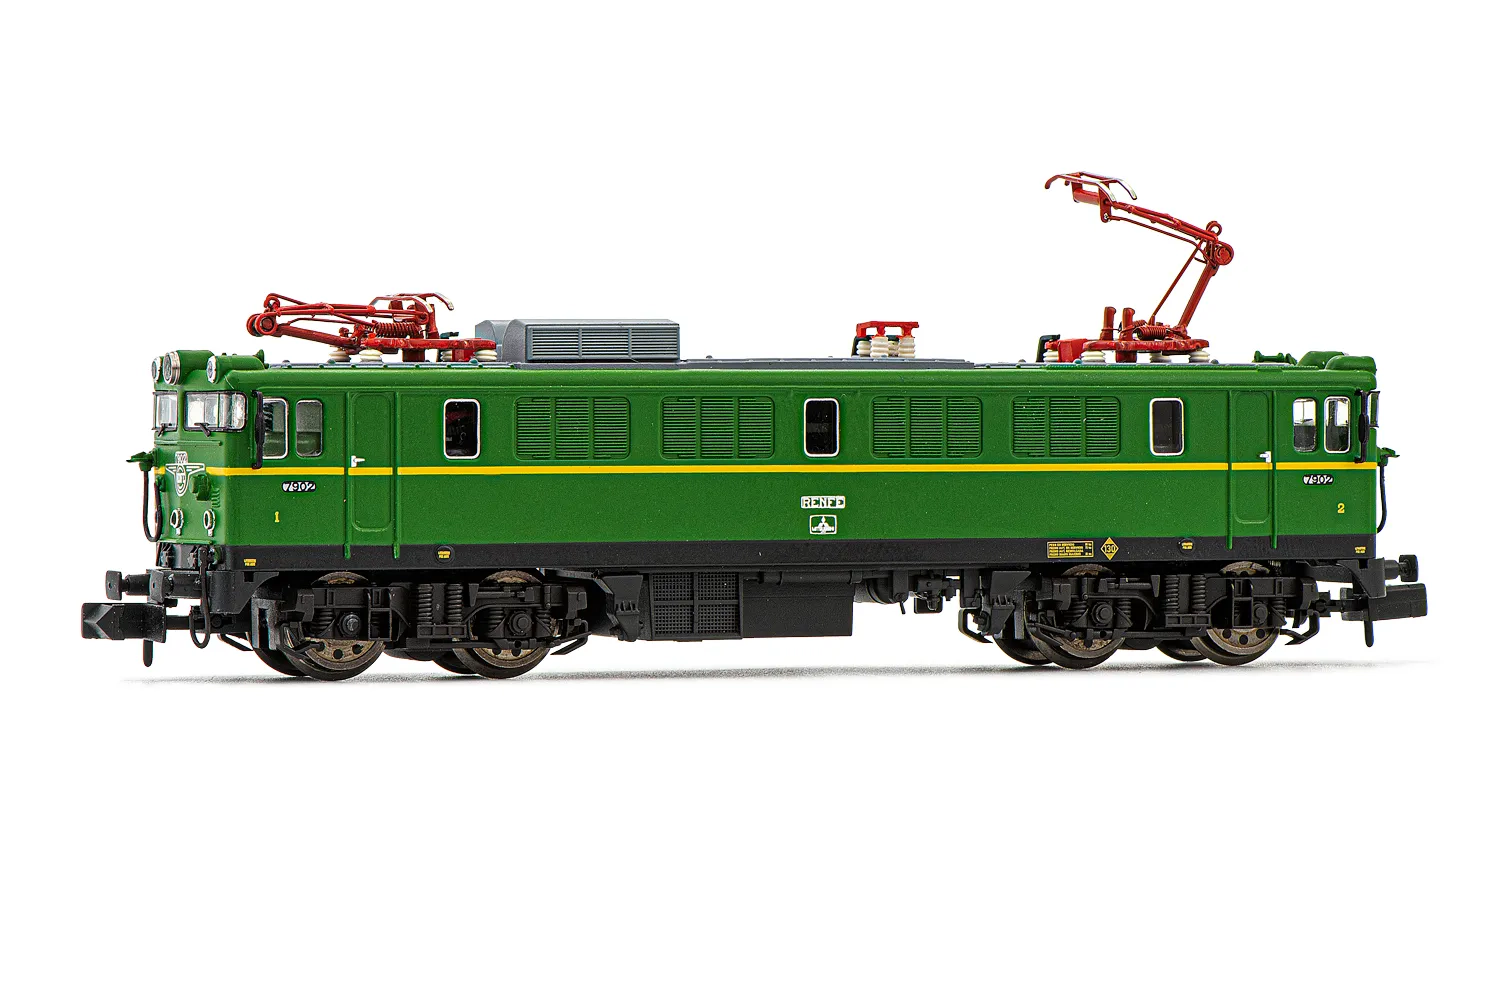 RENFE, locomotive électrique classe 279, livrée vert/jaune, ép. IV